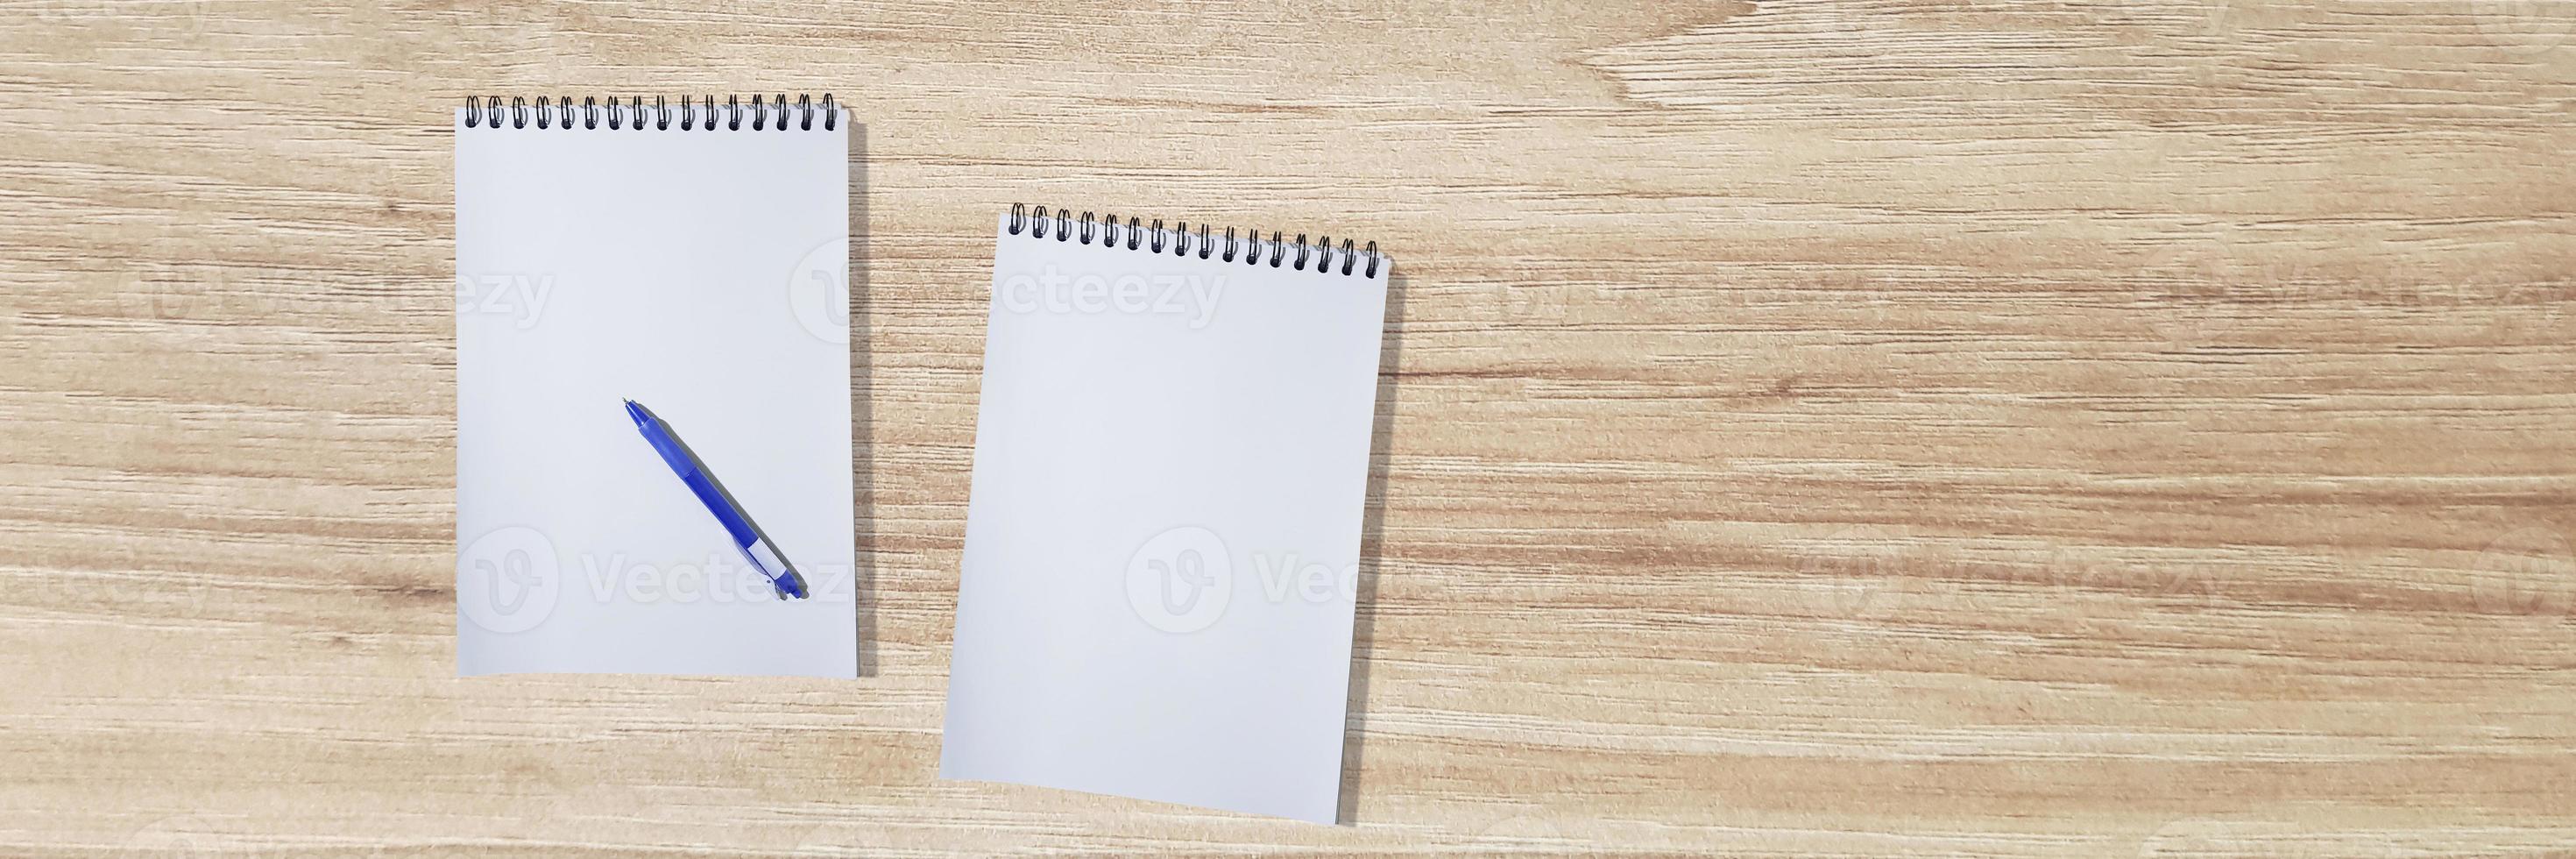 um caderno vazio com uma caneta é colocado sobre uma mesa de madeira. vista superior com área de entrada de texto foto